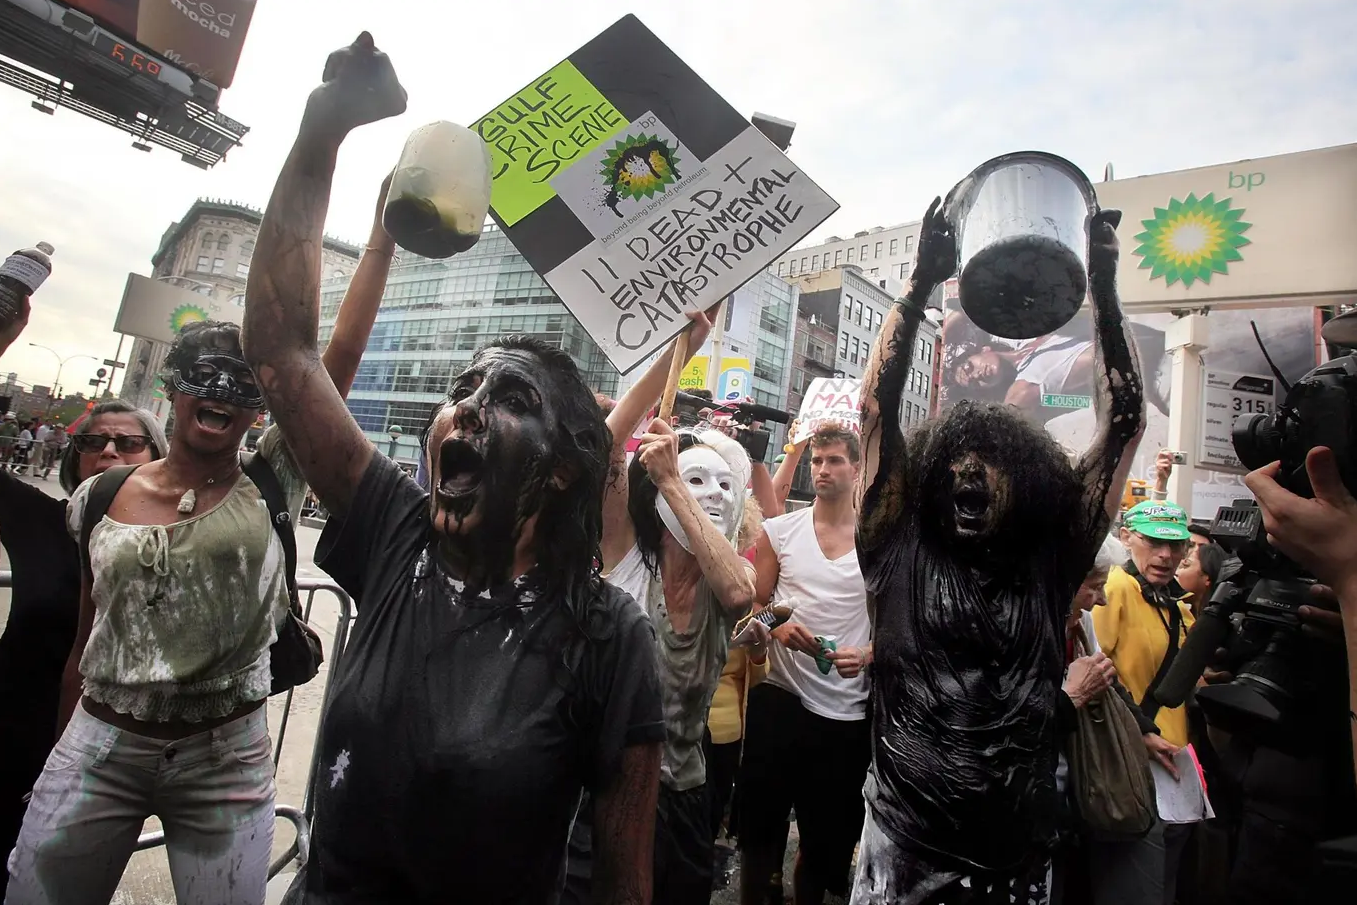 ناشطون سكبوا نفطاً مزيفاً على أنفسهم احتجاجاً على دور "بريتيش بتروليوم" في كارثة التسرّب النفطي بخليج المكسيك عام 2010